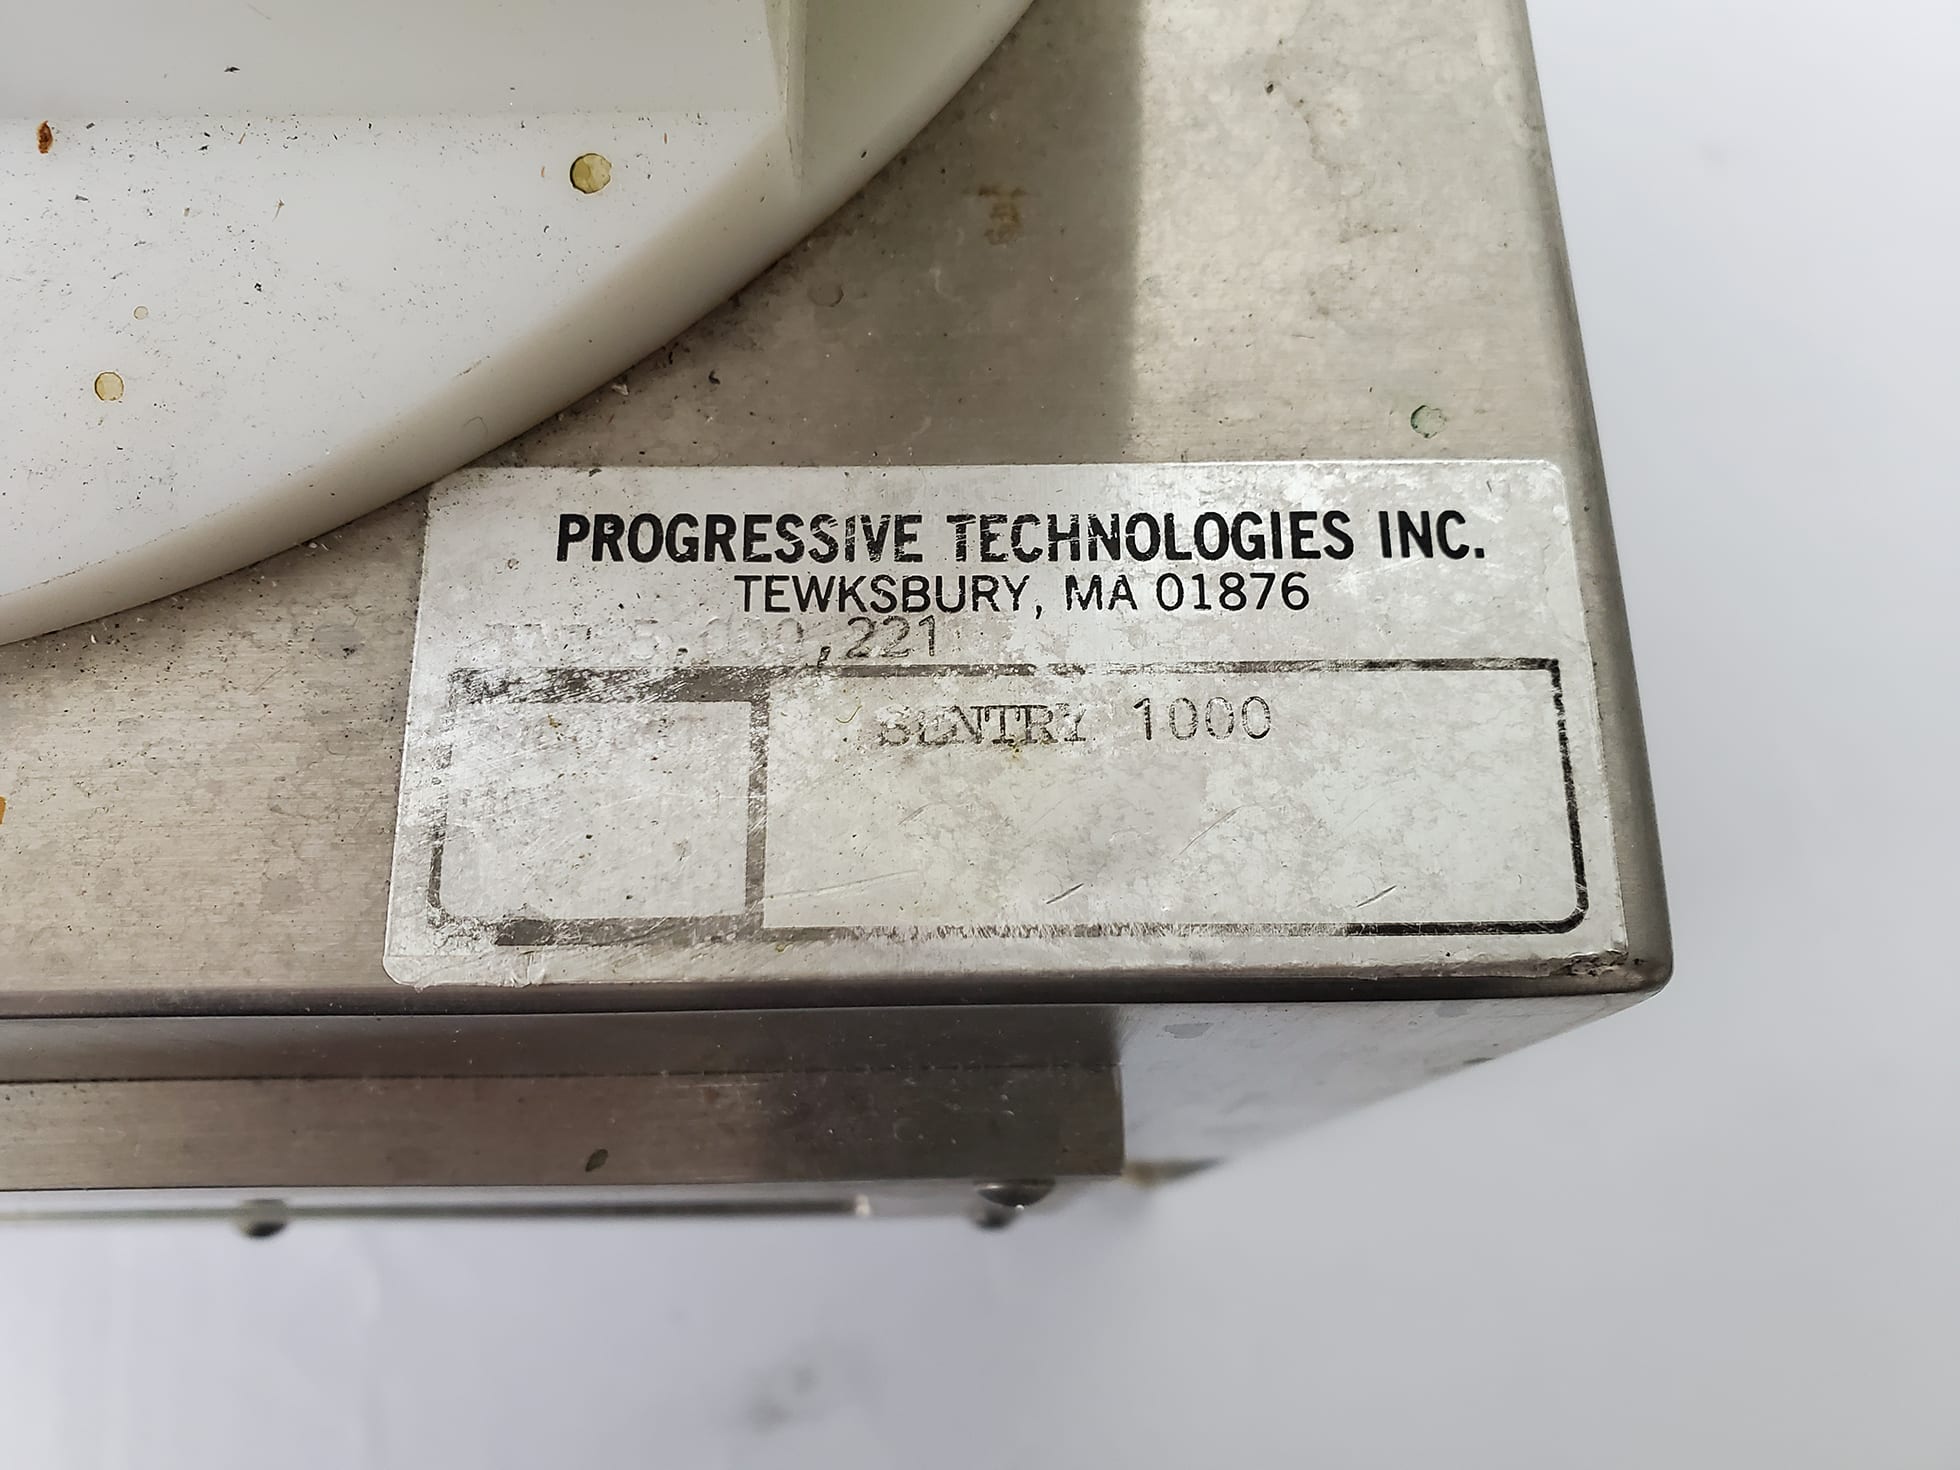 Progressive Technologies Sentry 1000 Blower for Tel Mark 8 -58585